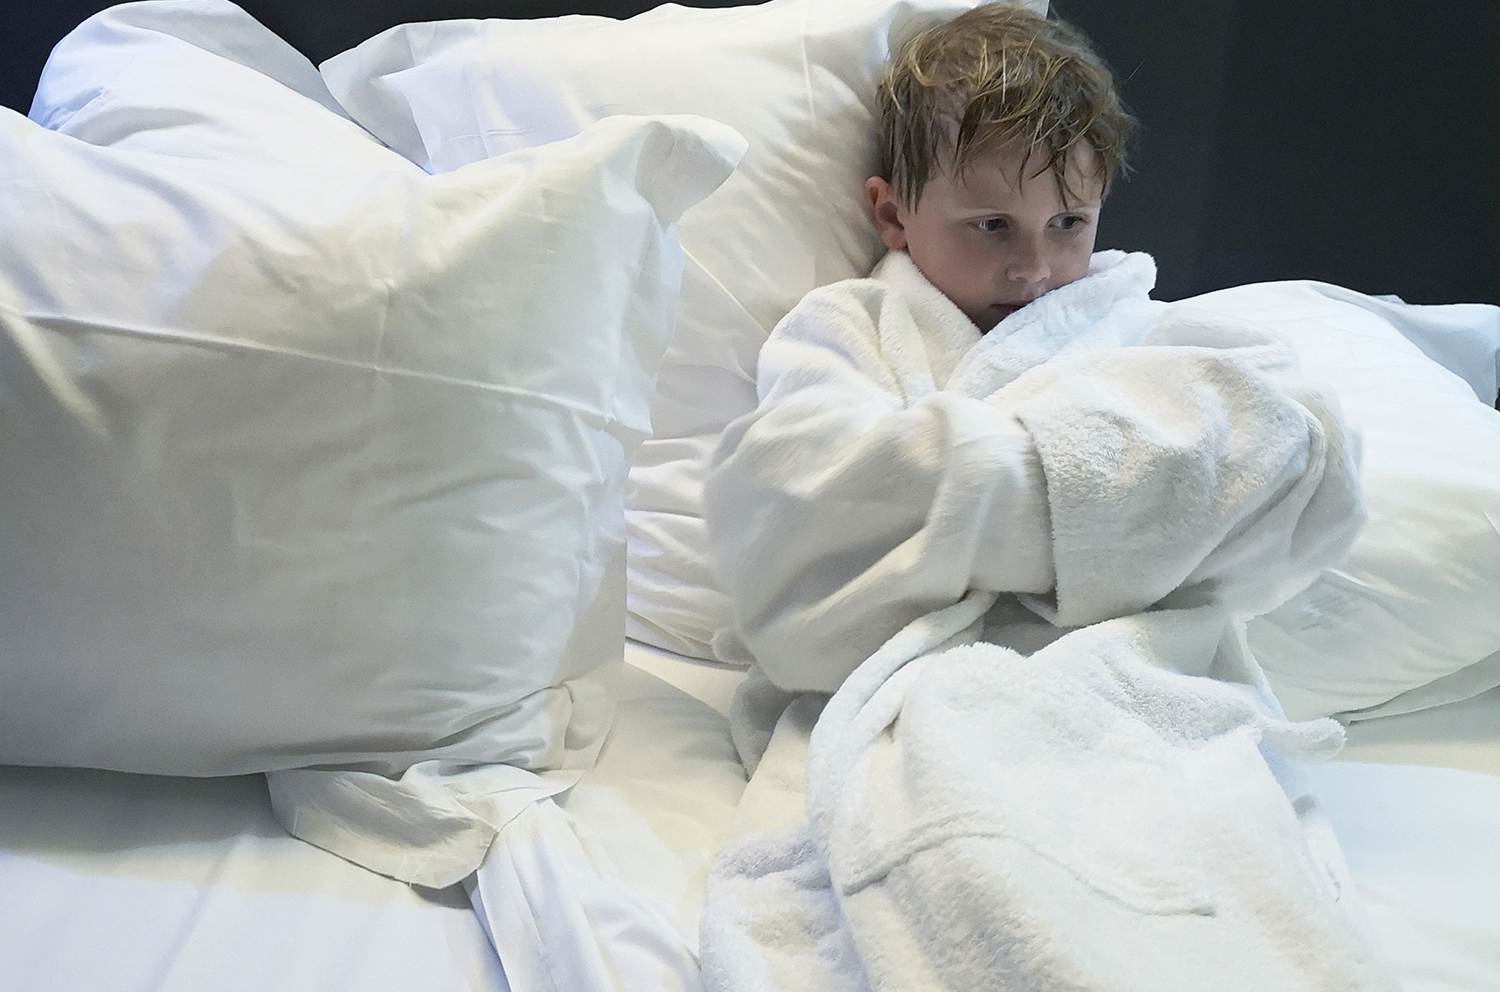 Sønnen sitter i en seng med badekåpe og luksus-sengetøy